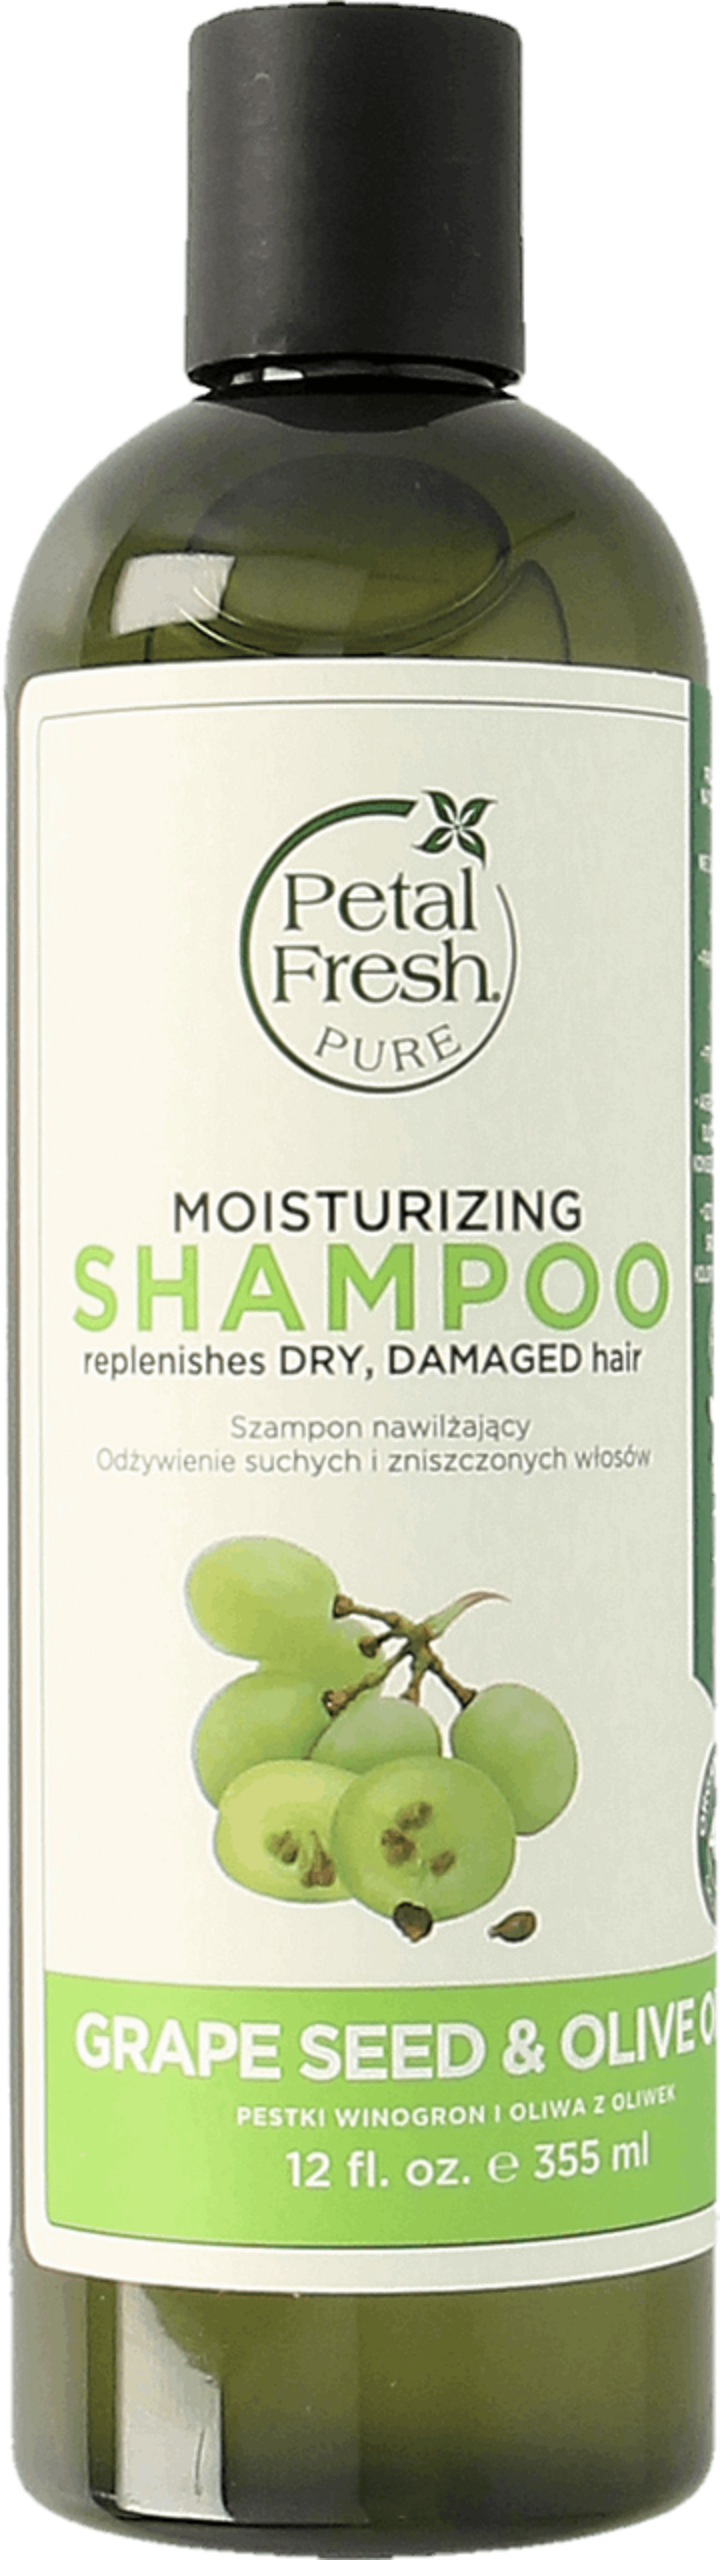 petal fresh szampon 335 ml do włosów suchych